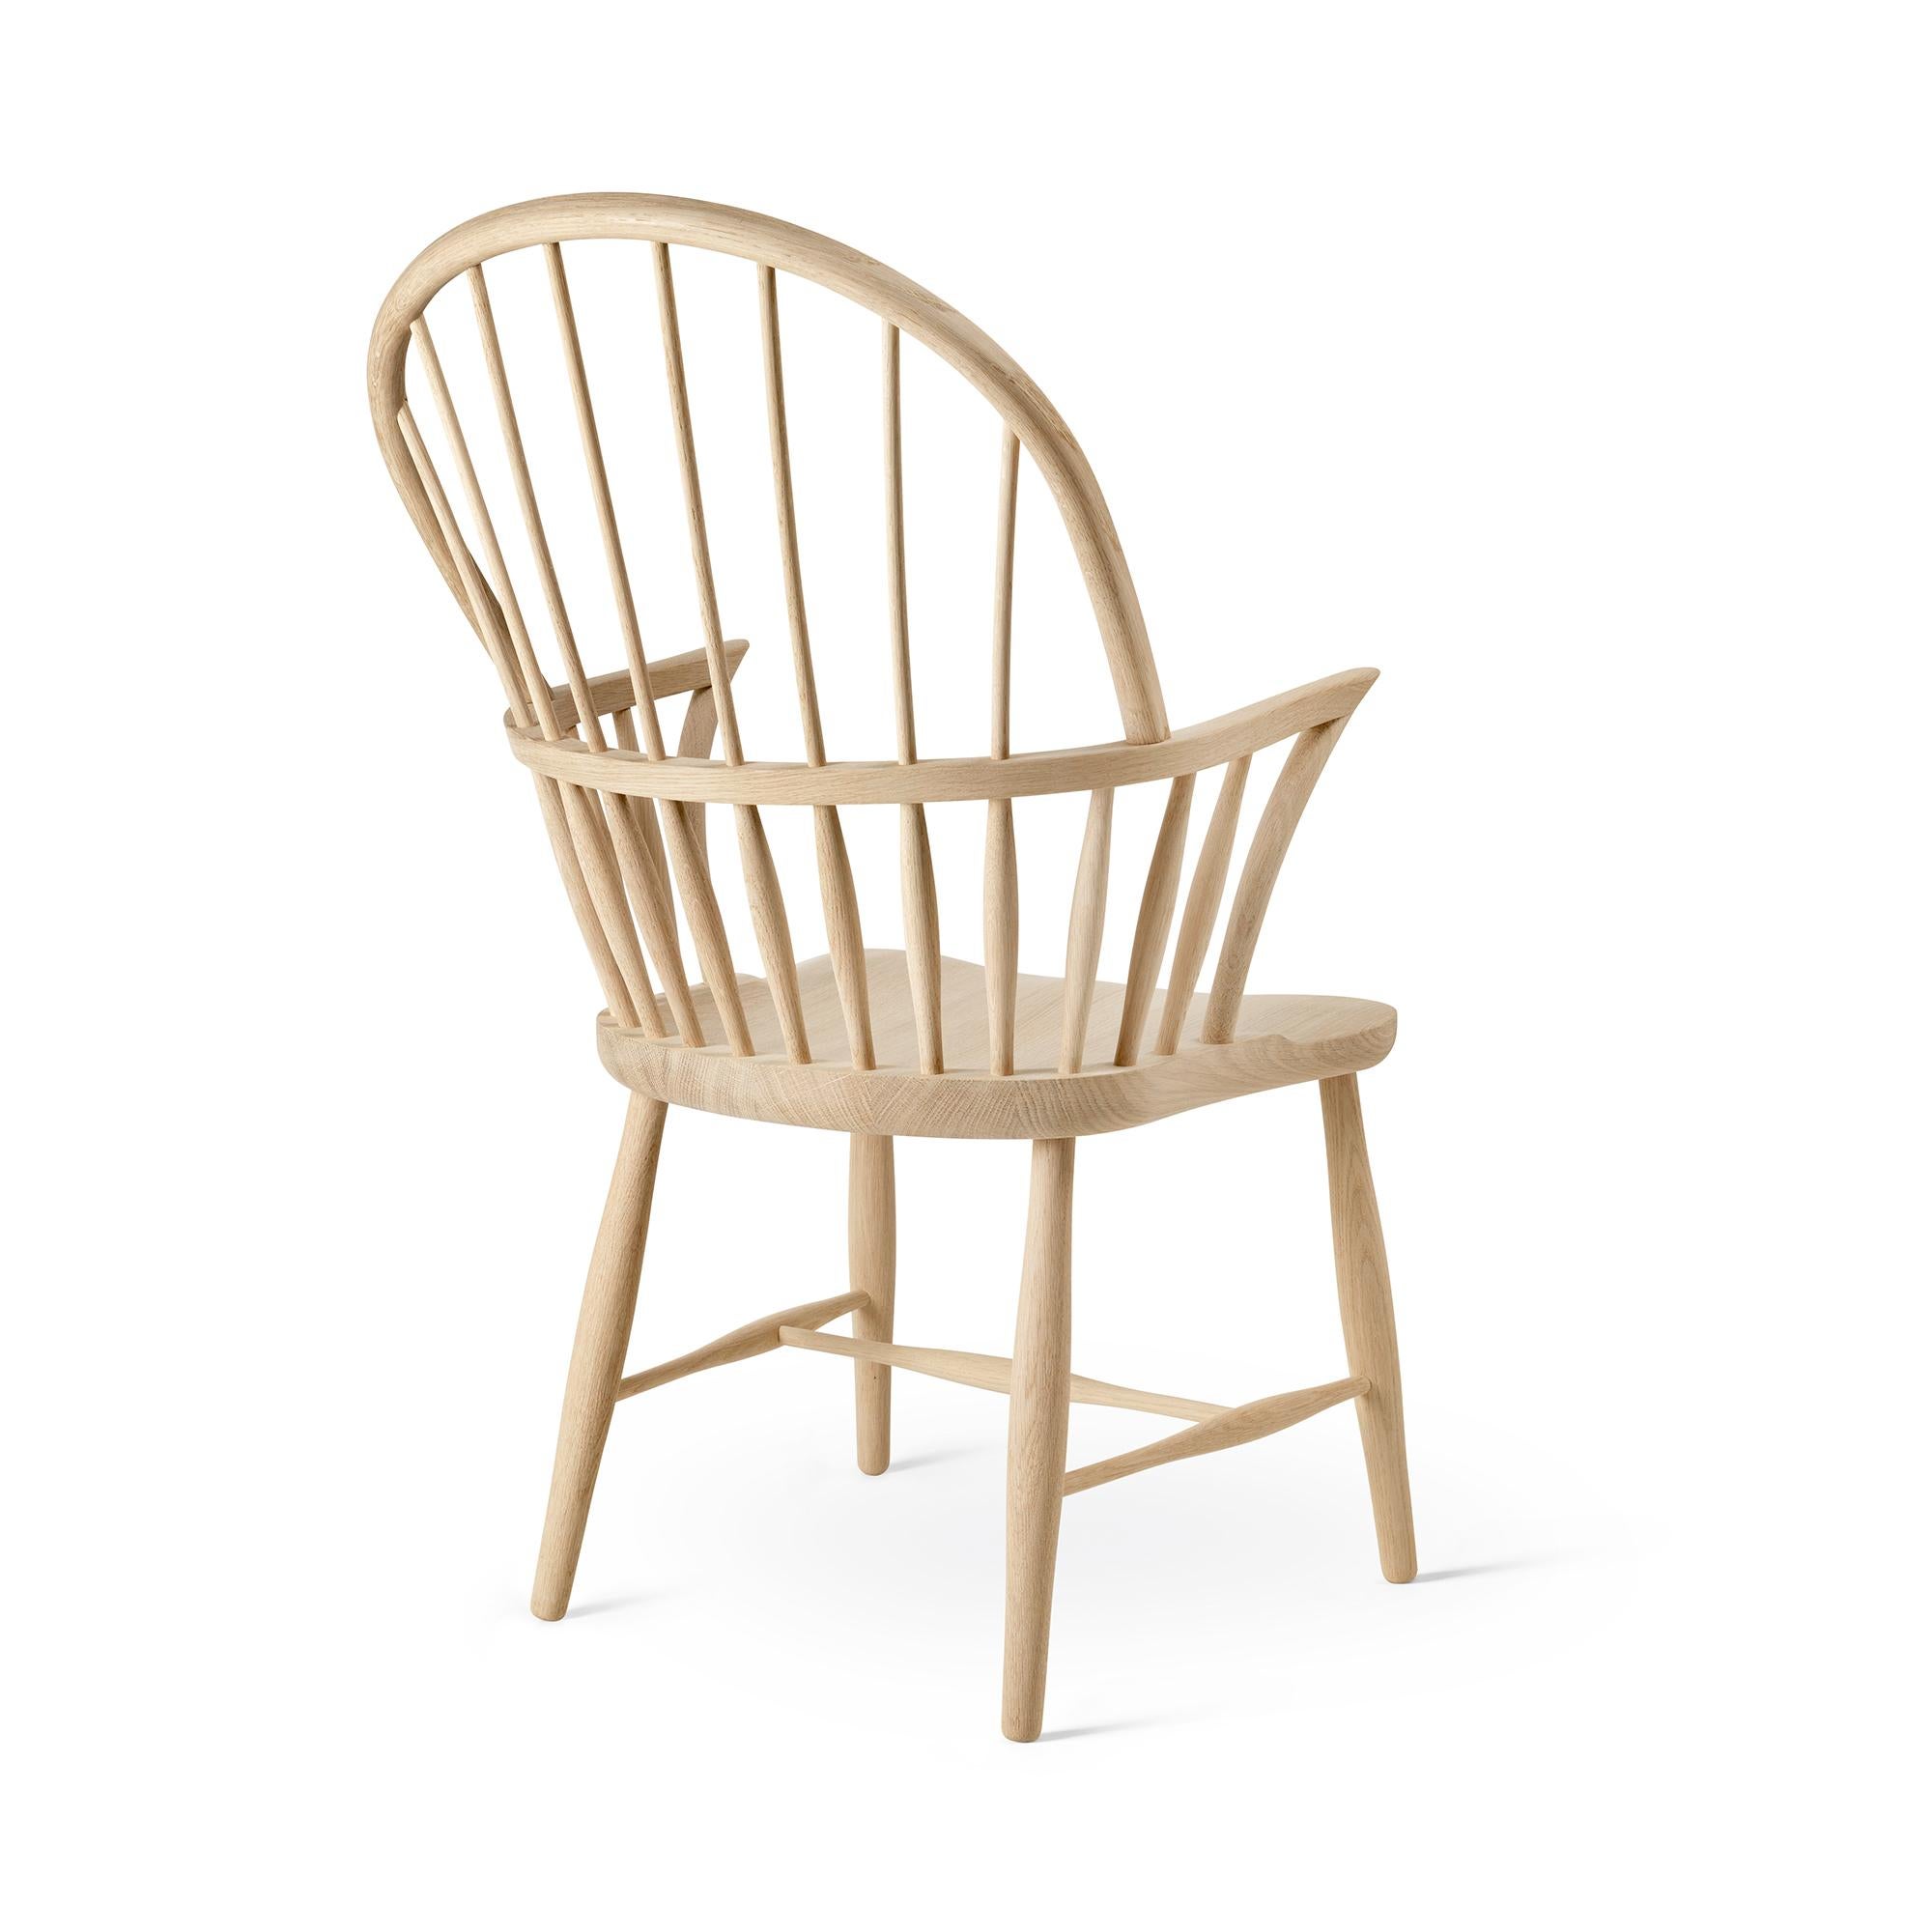 Frits Henningsen 'FH38 Windsor' Chair in Oiled Oak for Carl Hansen & Son For Sale 5